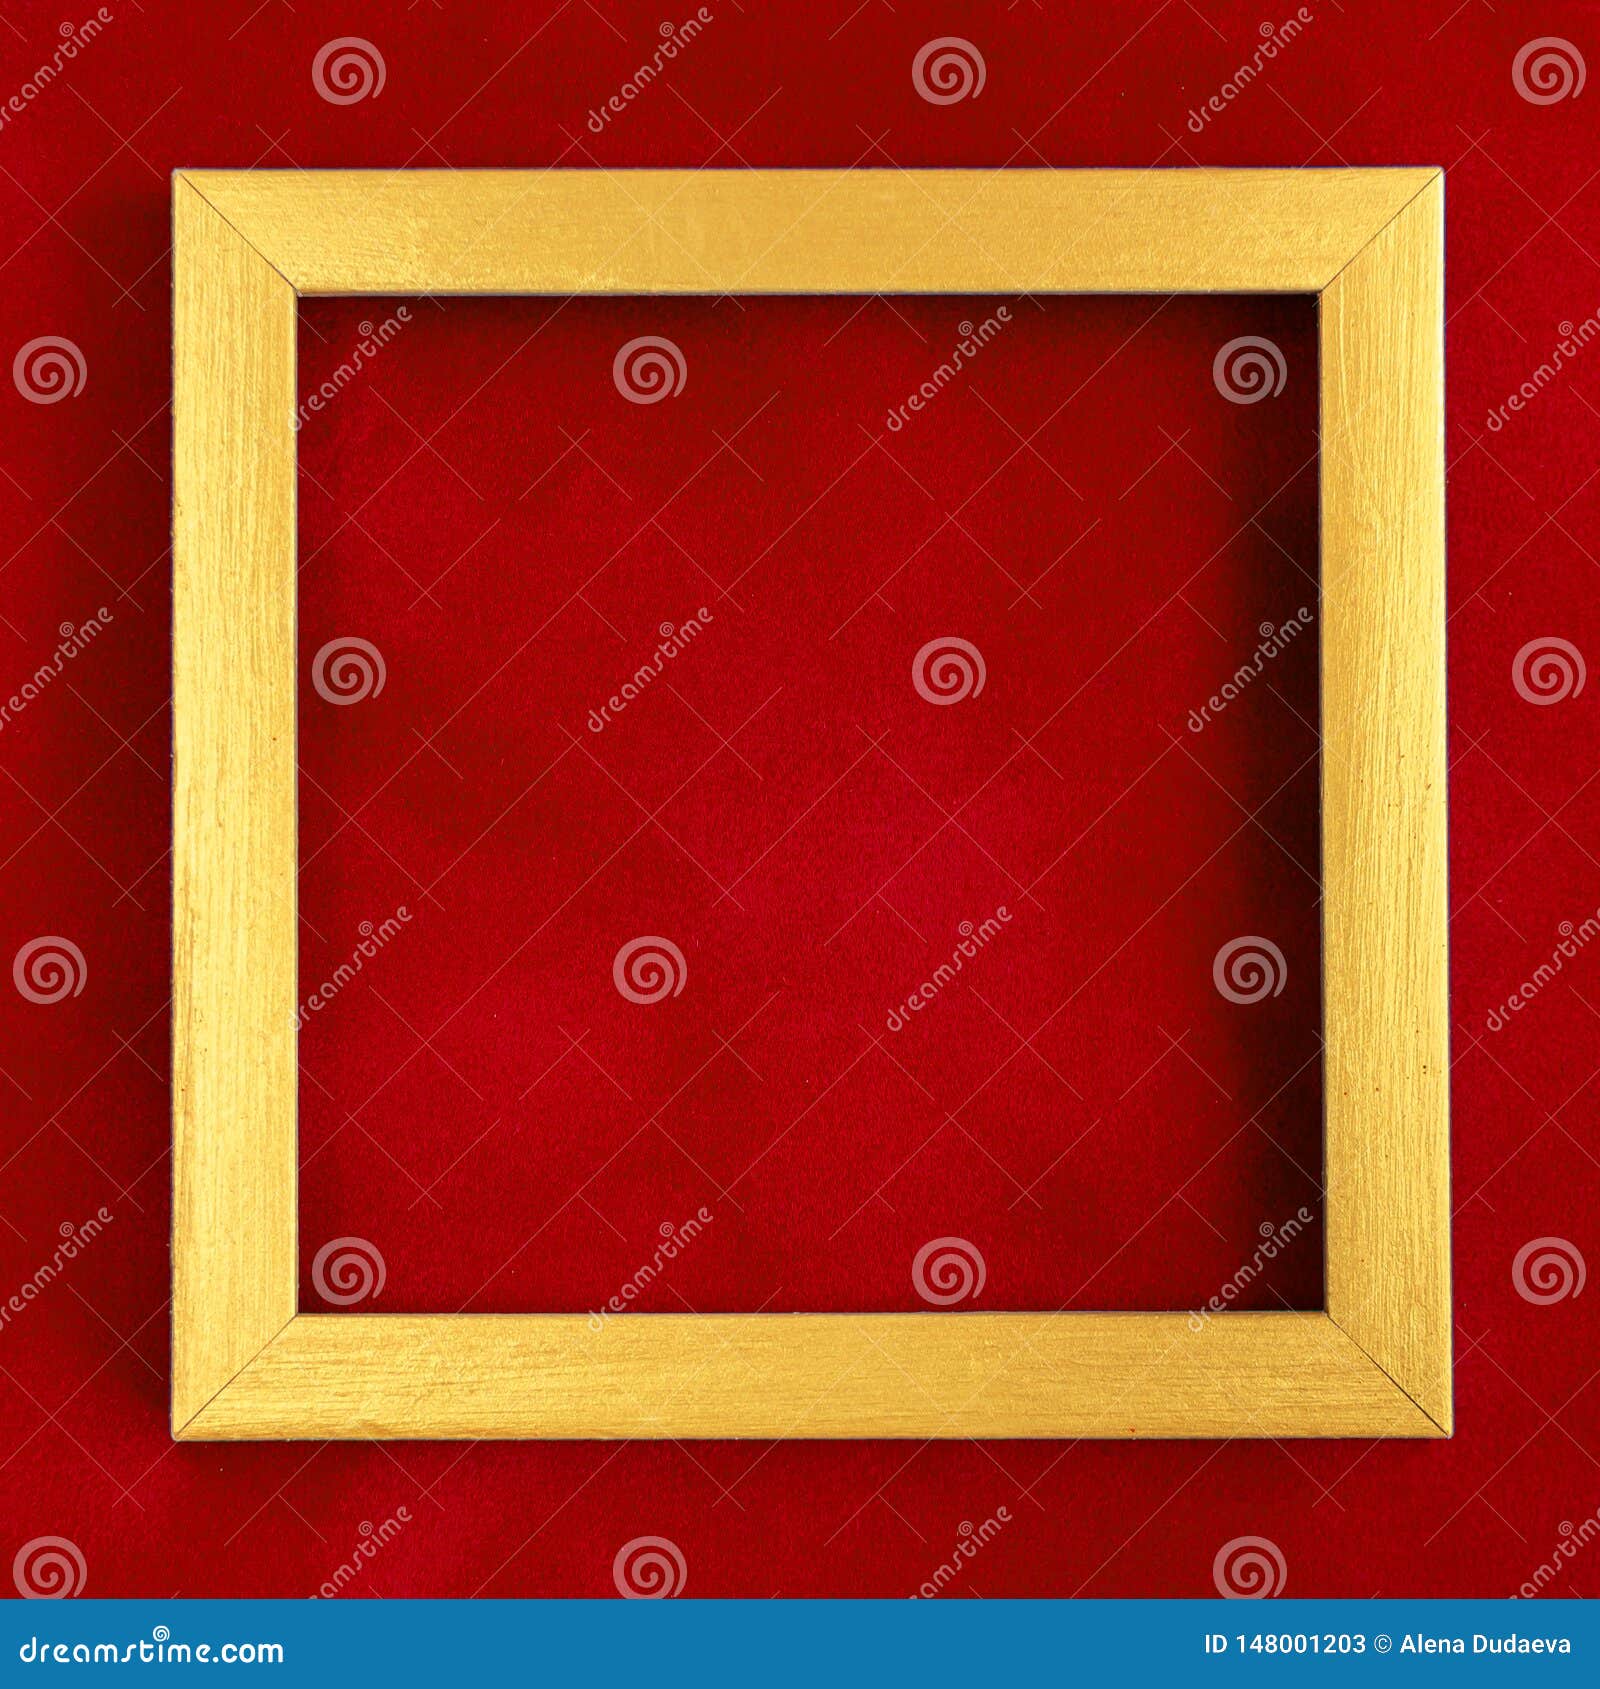 Uartig kjole udslæt Square Golden Wooden Frame on Red Velvet Background Stock Image - Image of  background, luxury: 148001203